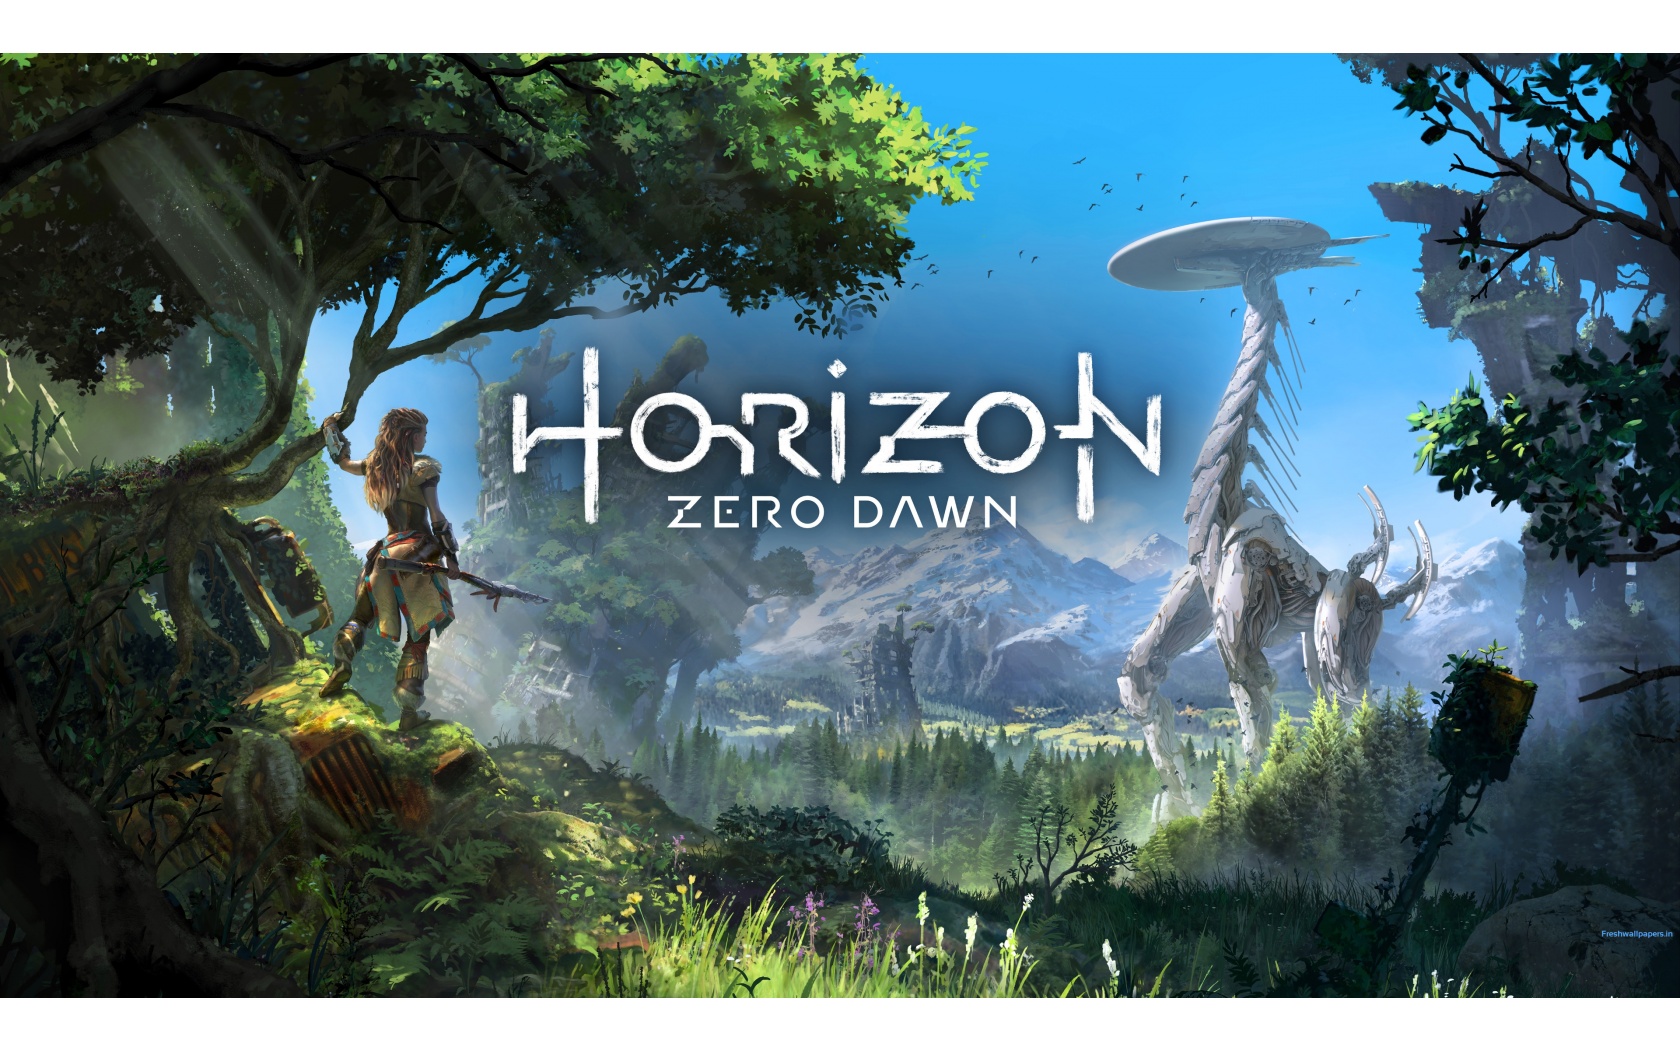 Live Horizon Zero Dawn Wallpapers Download In Full - Horizon Zero Dawn Poster , HD Wallpaper & Backgrounds